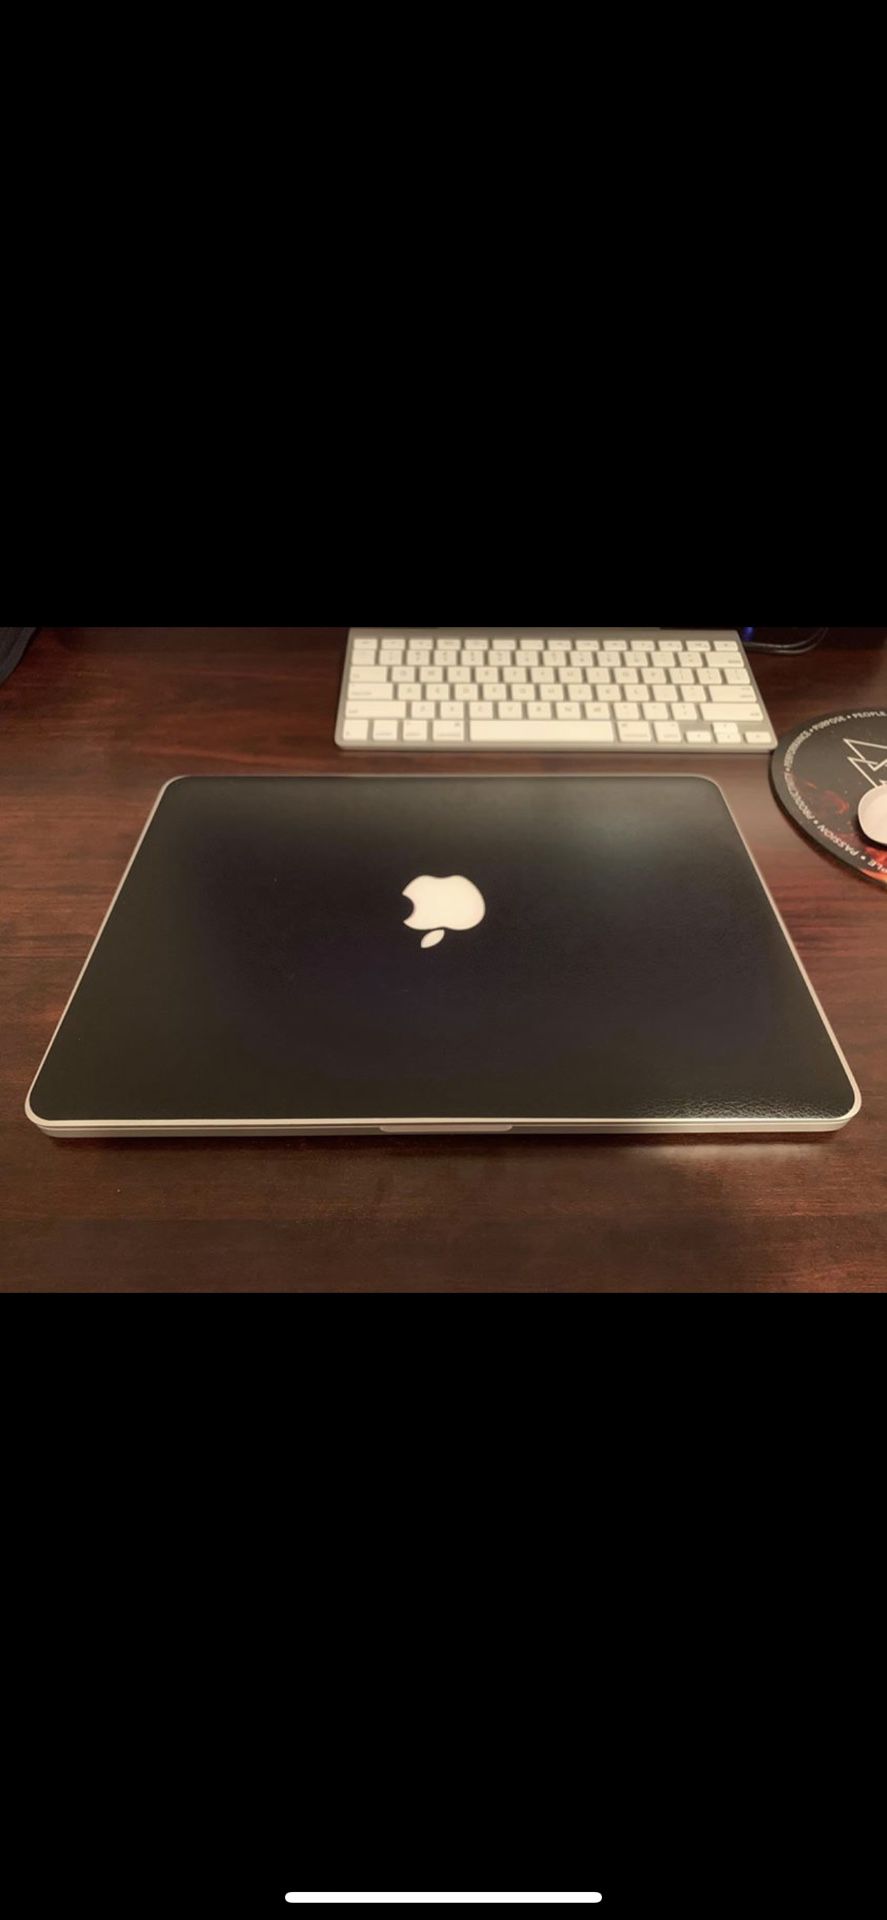 Macbook Pro 13” 2015 i7 8gb Retina 500gb SSD